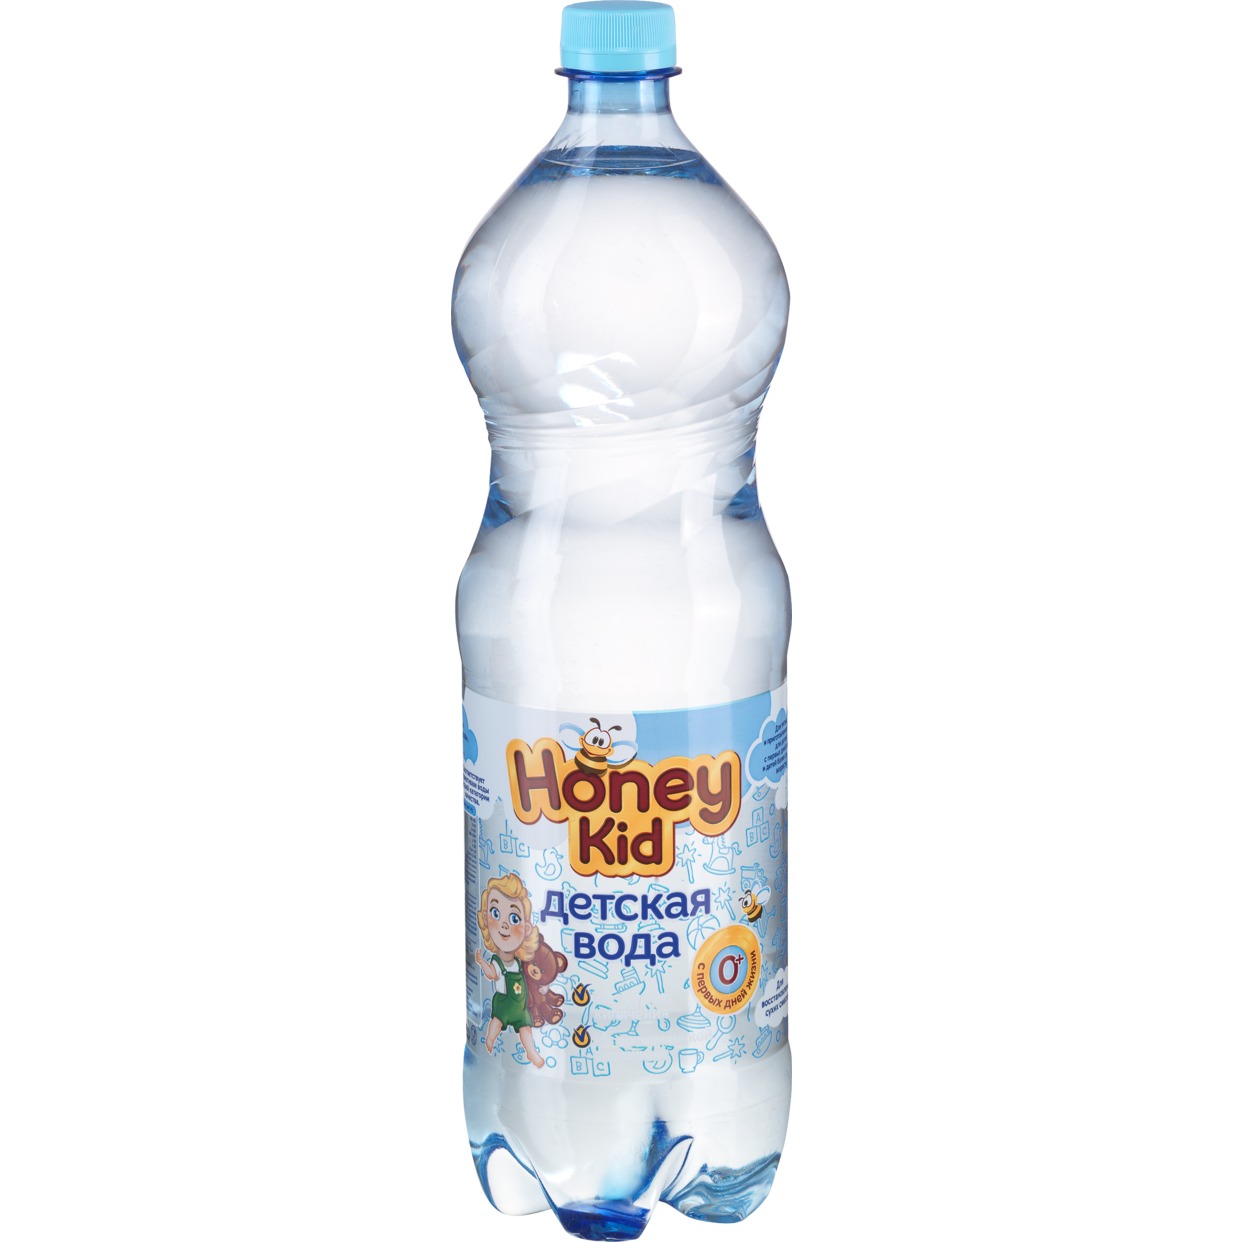 Вода питьевая для детского питания «Для детей» негазированная, 1,5л по акции в Пятерочке